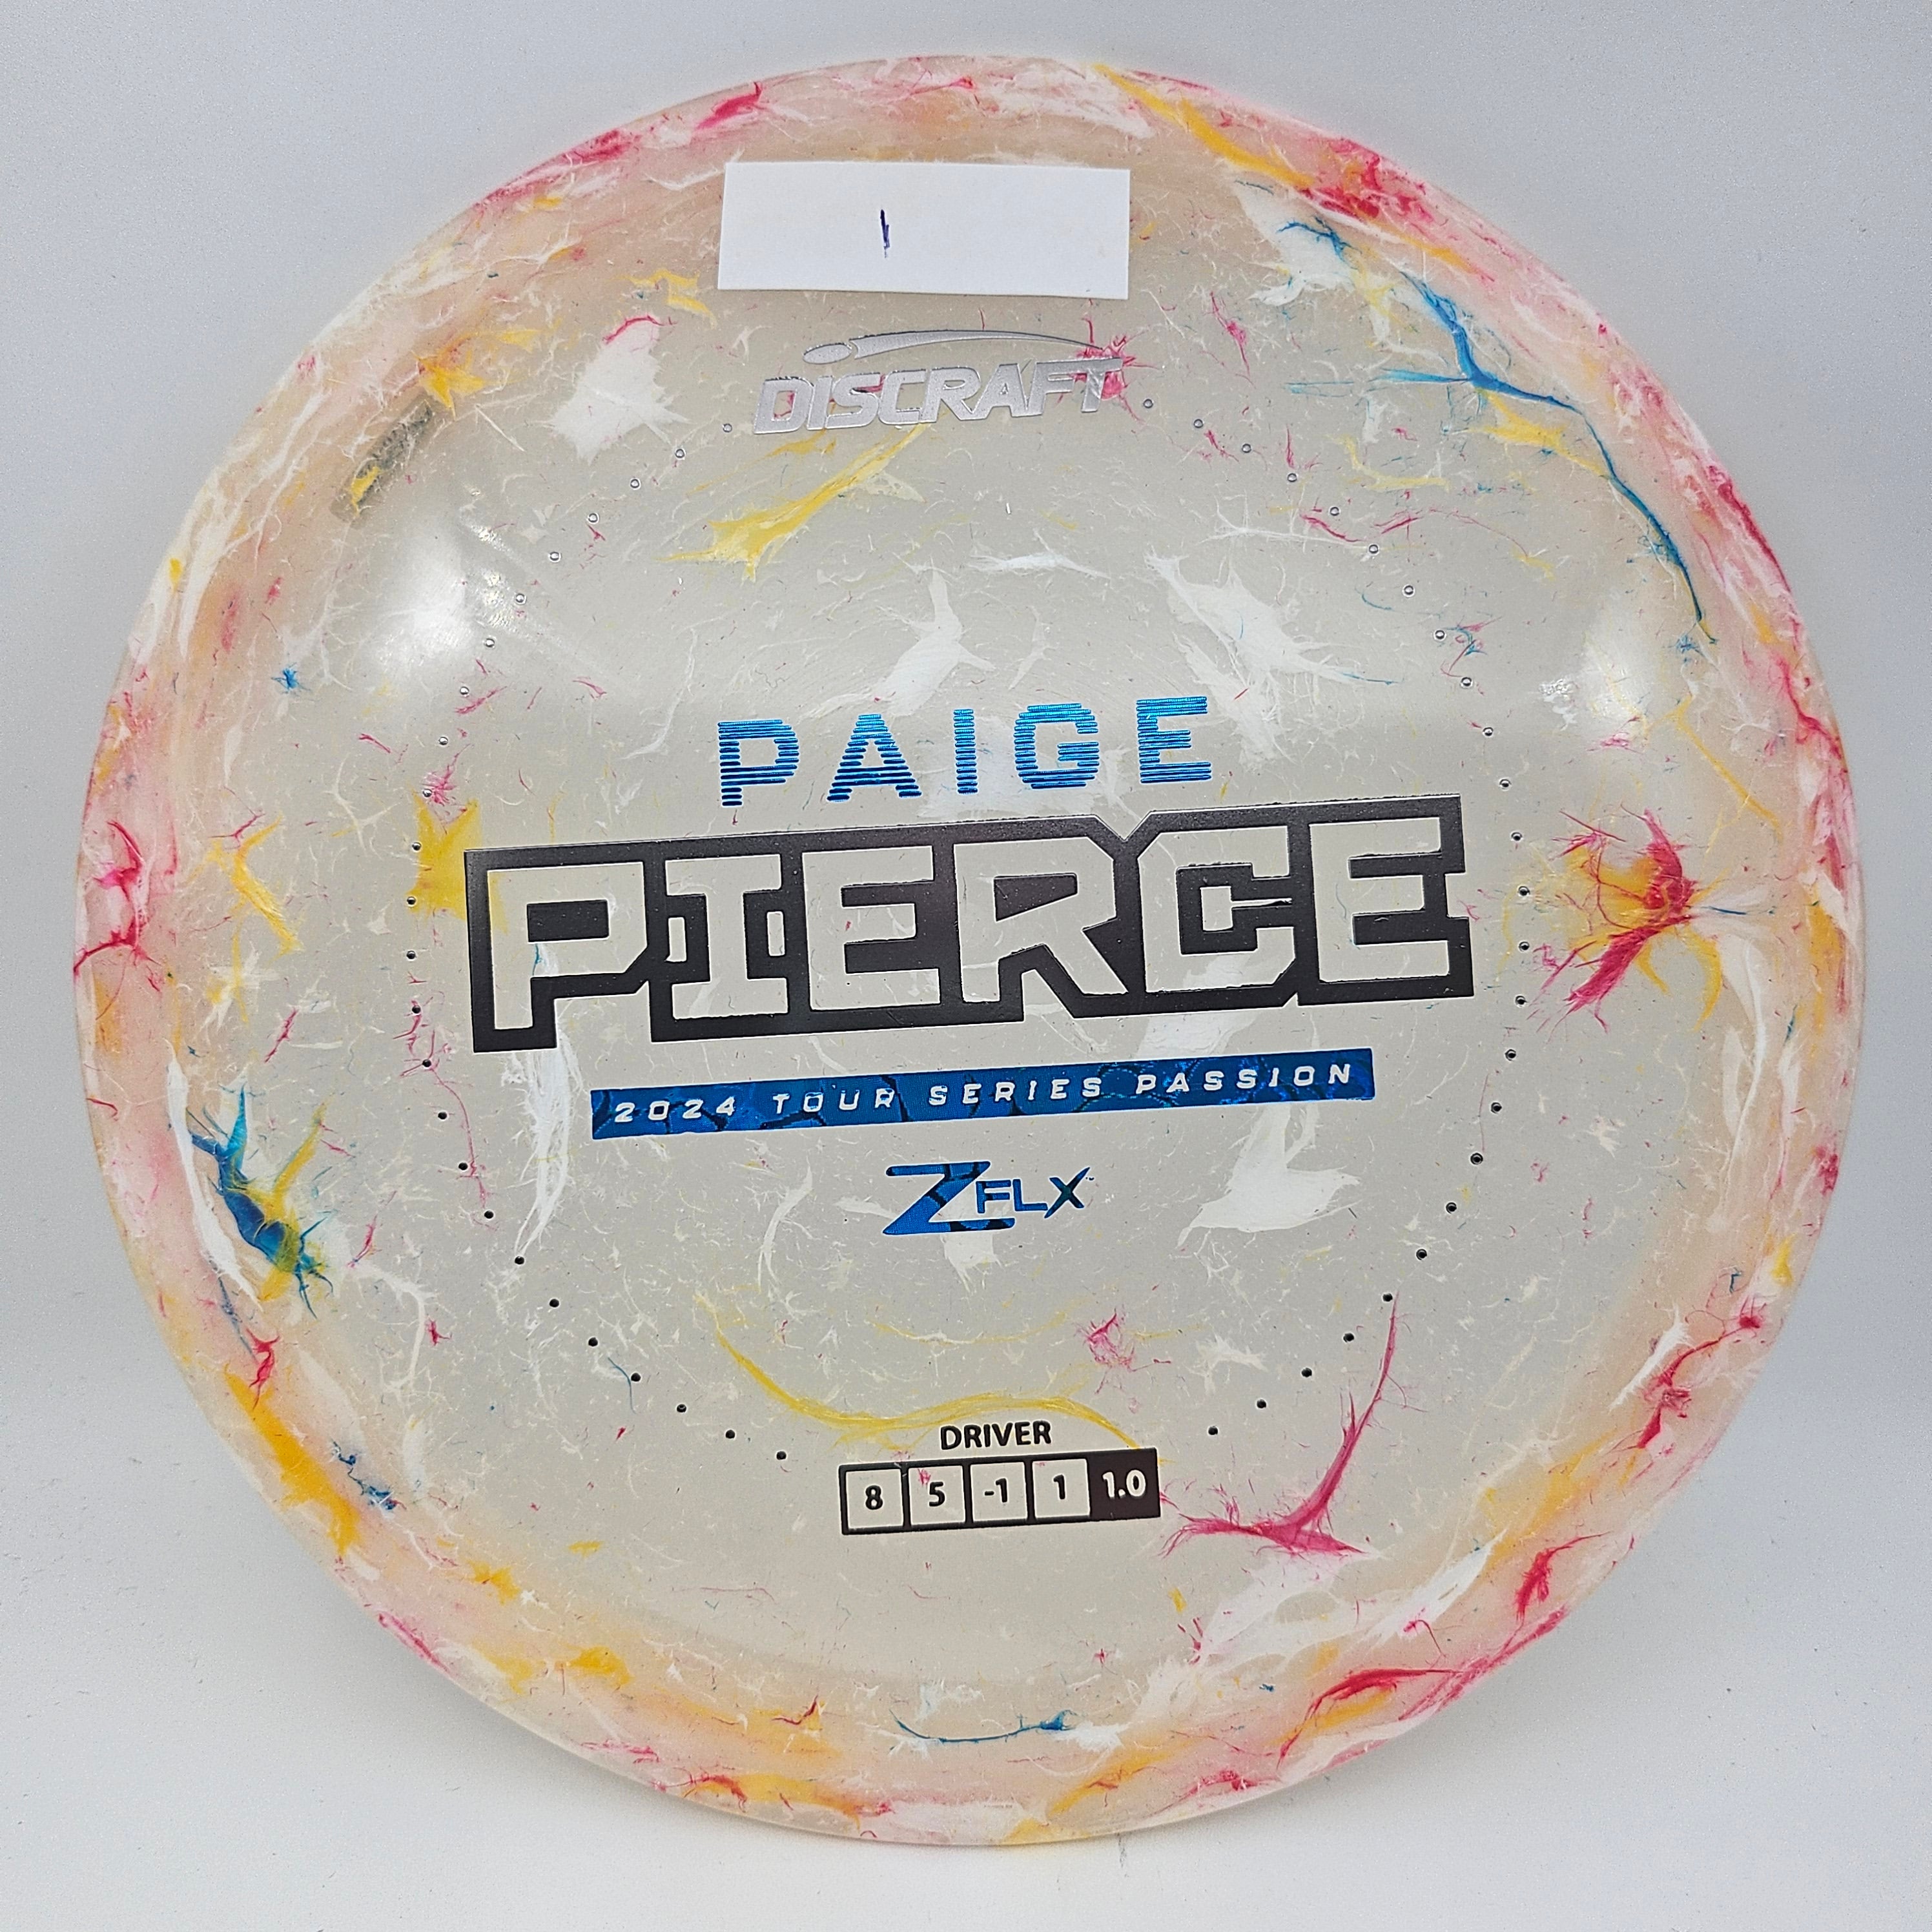 Z FLX Jawbreaker Passion - Paige Pierce Tour Series 2024